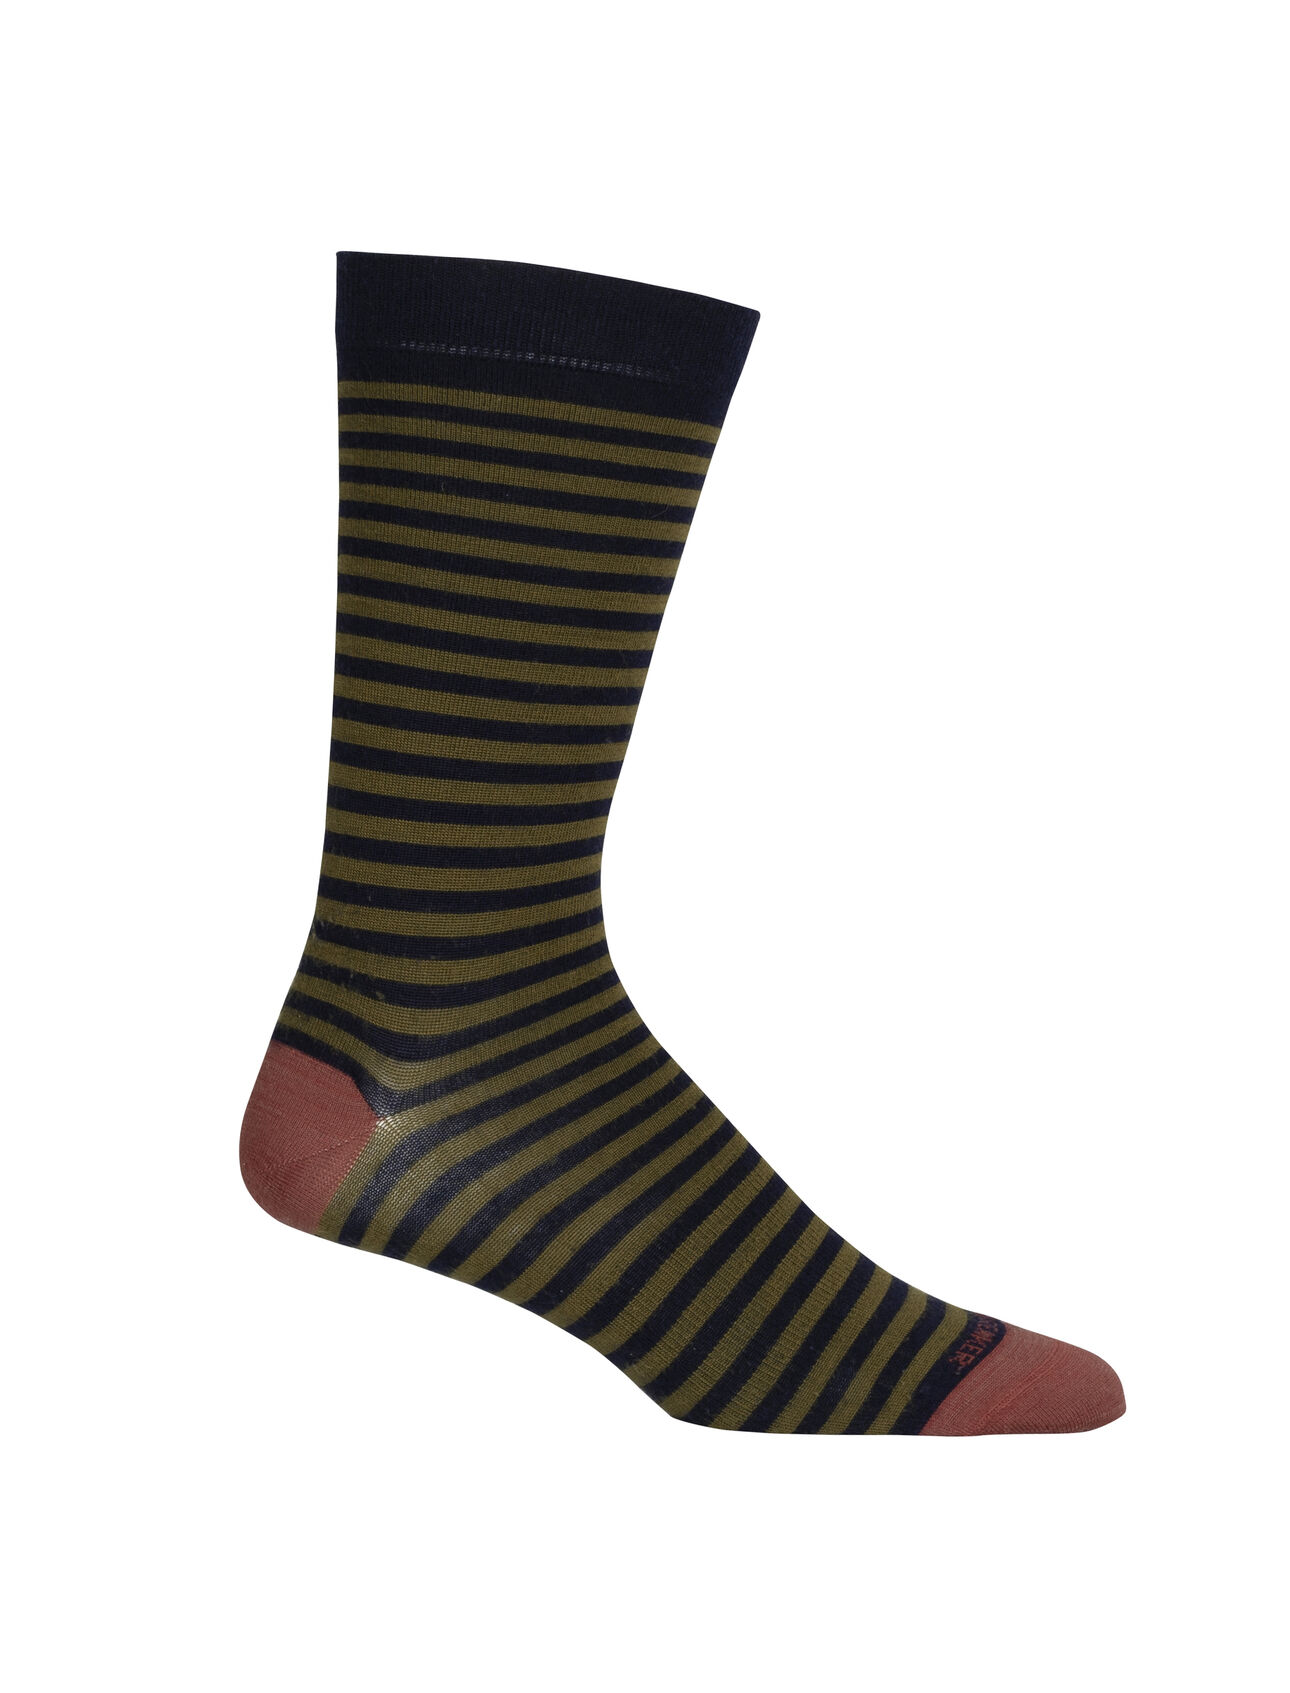 Merino Lifestyle Feinstricksocken Crew Stripe Herren Leichte, lässige Socken für jeden Tag – die Lifestyle Feinstricksocken Crew Stripe verbinden den Komfort von hochwertiger Merinowolle mit einer robusten Konstruktion.